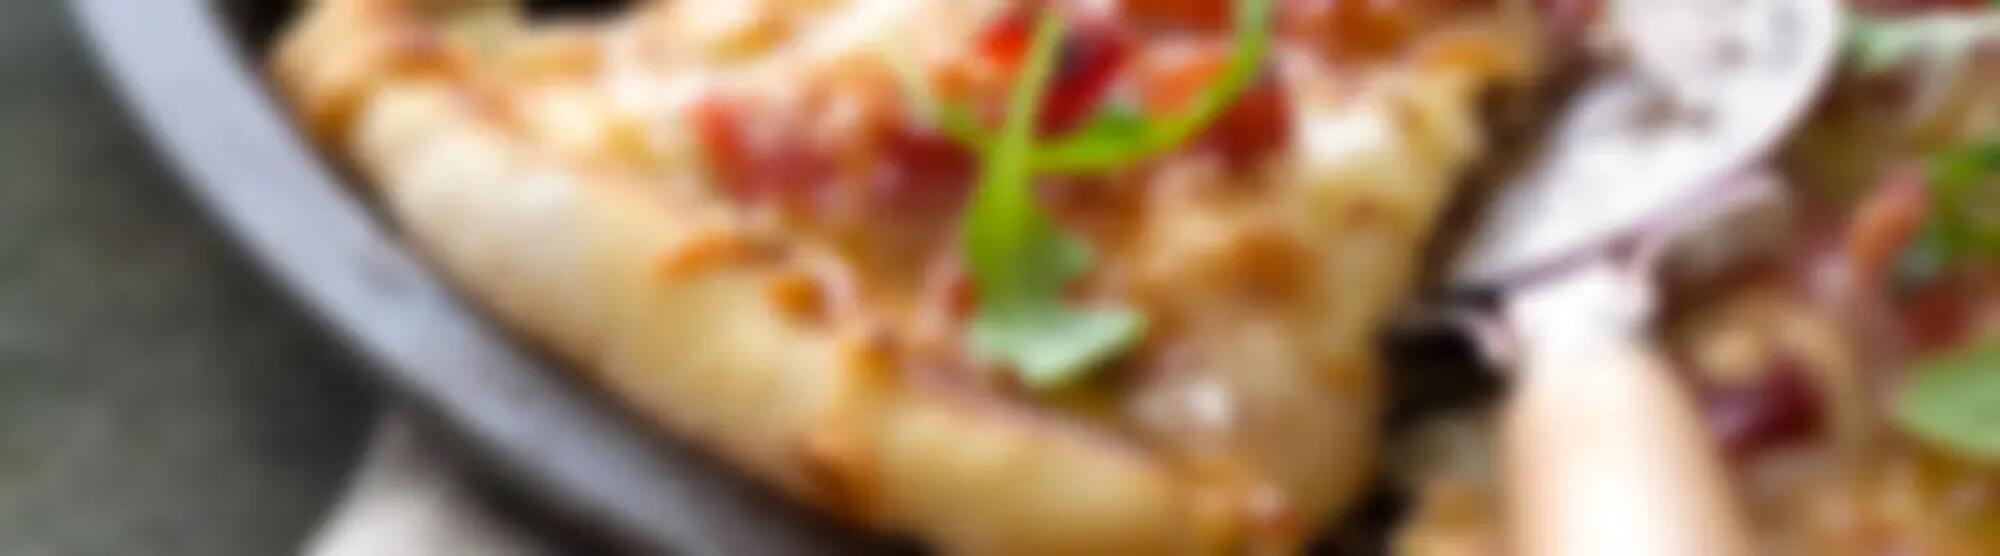 Recette : Pizza au jambon fumé et Parmigiano Reggiano